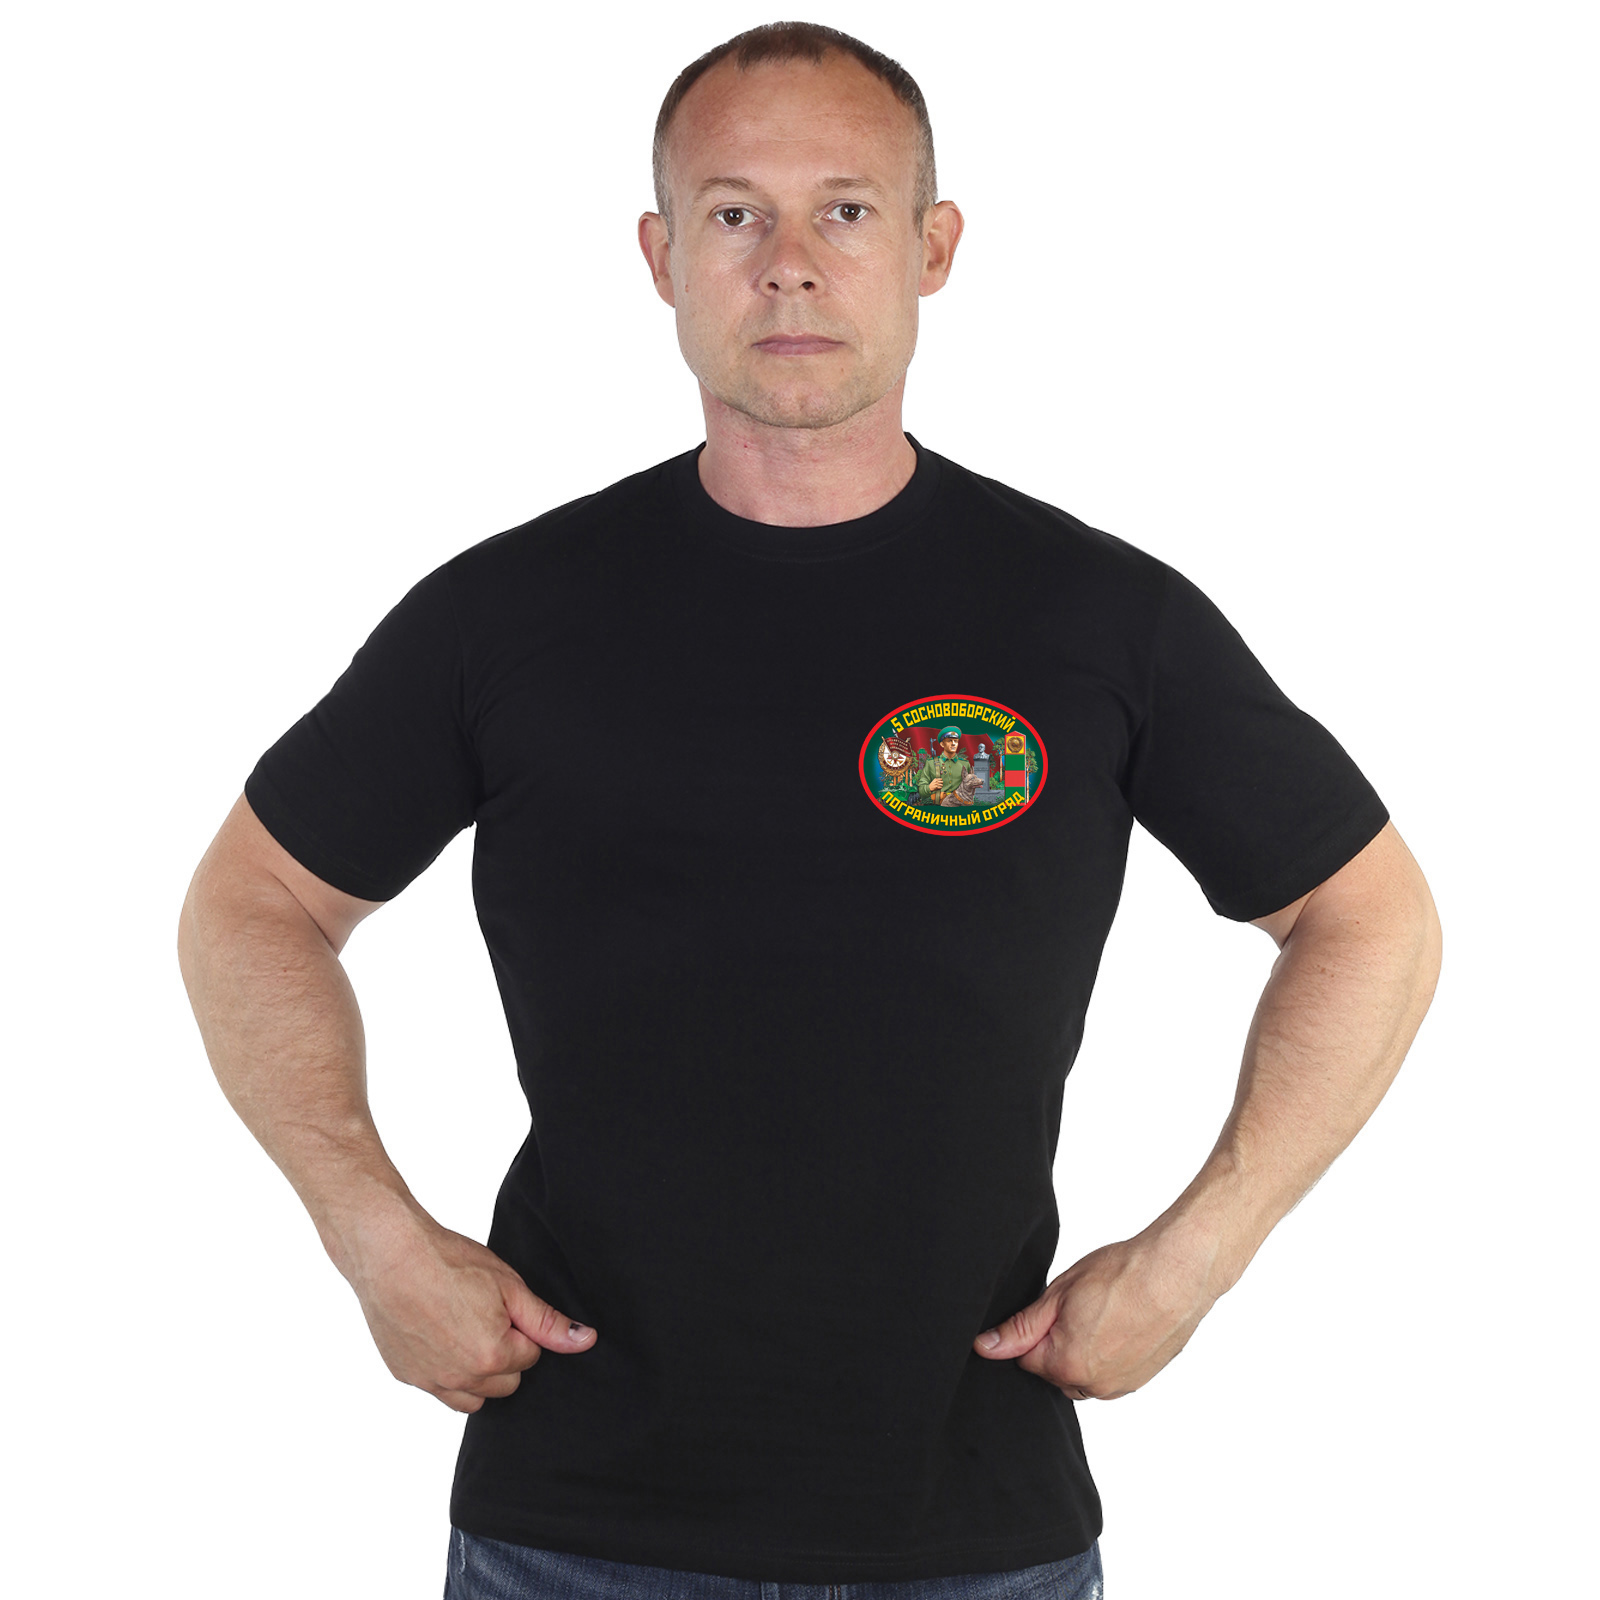 Мужская футболка 5 Сосновоборский пограничный отряд